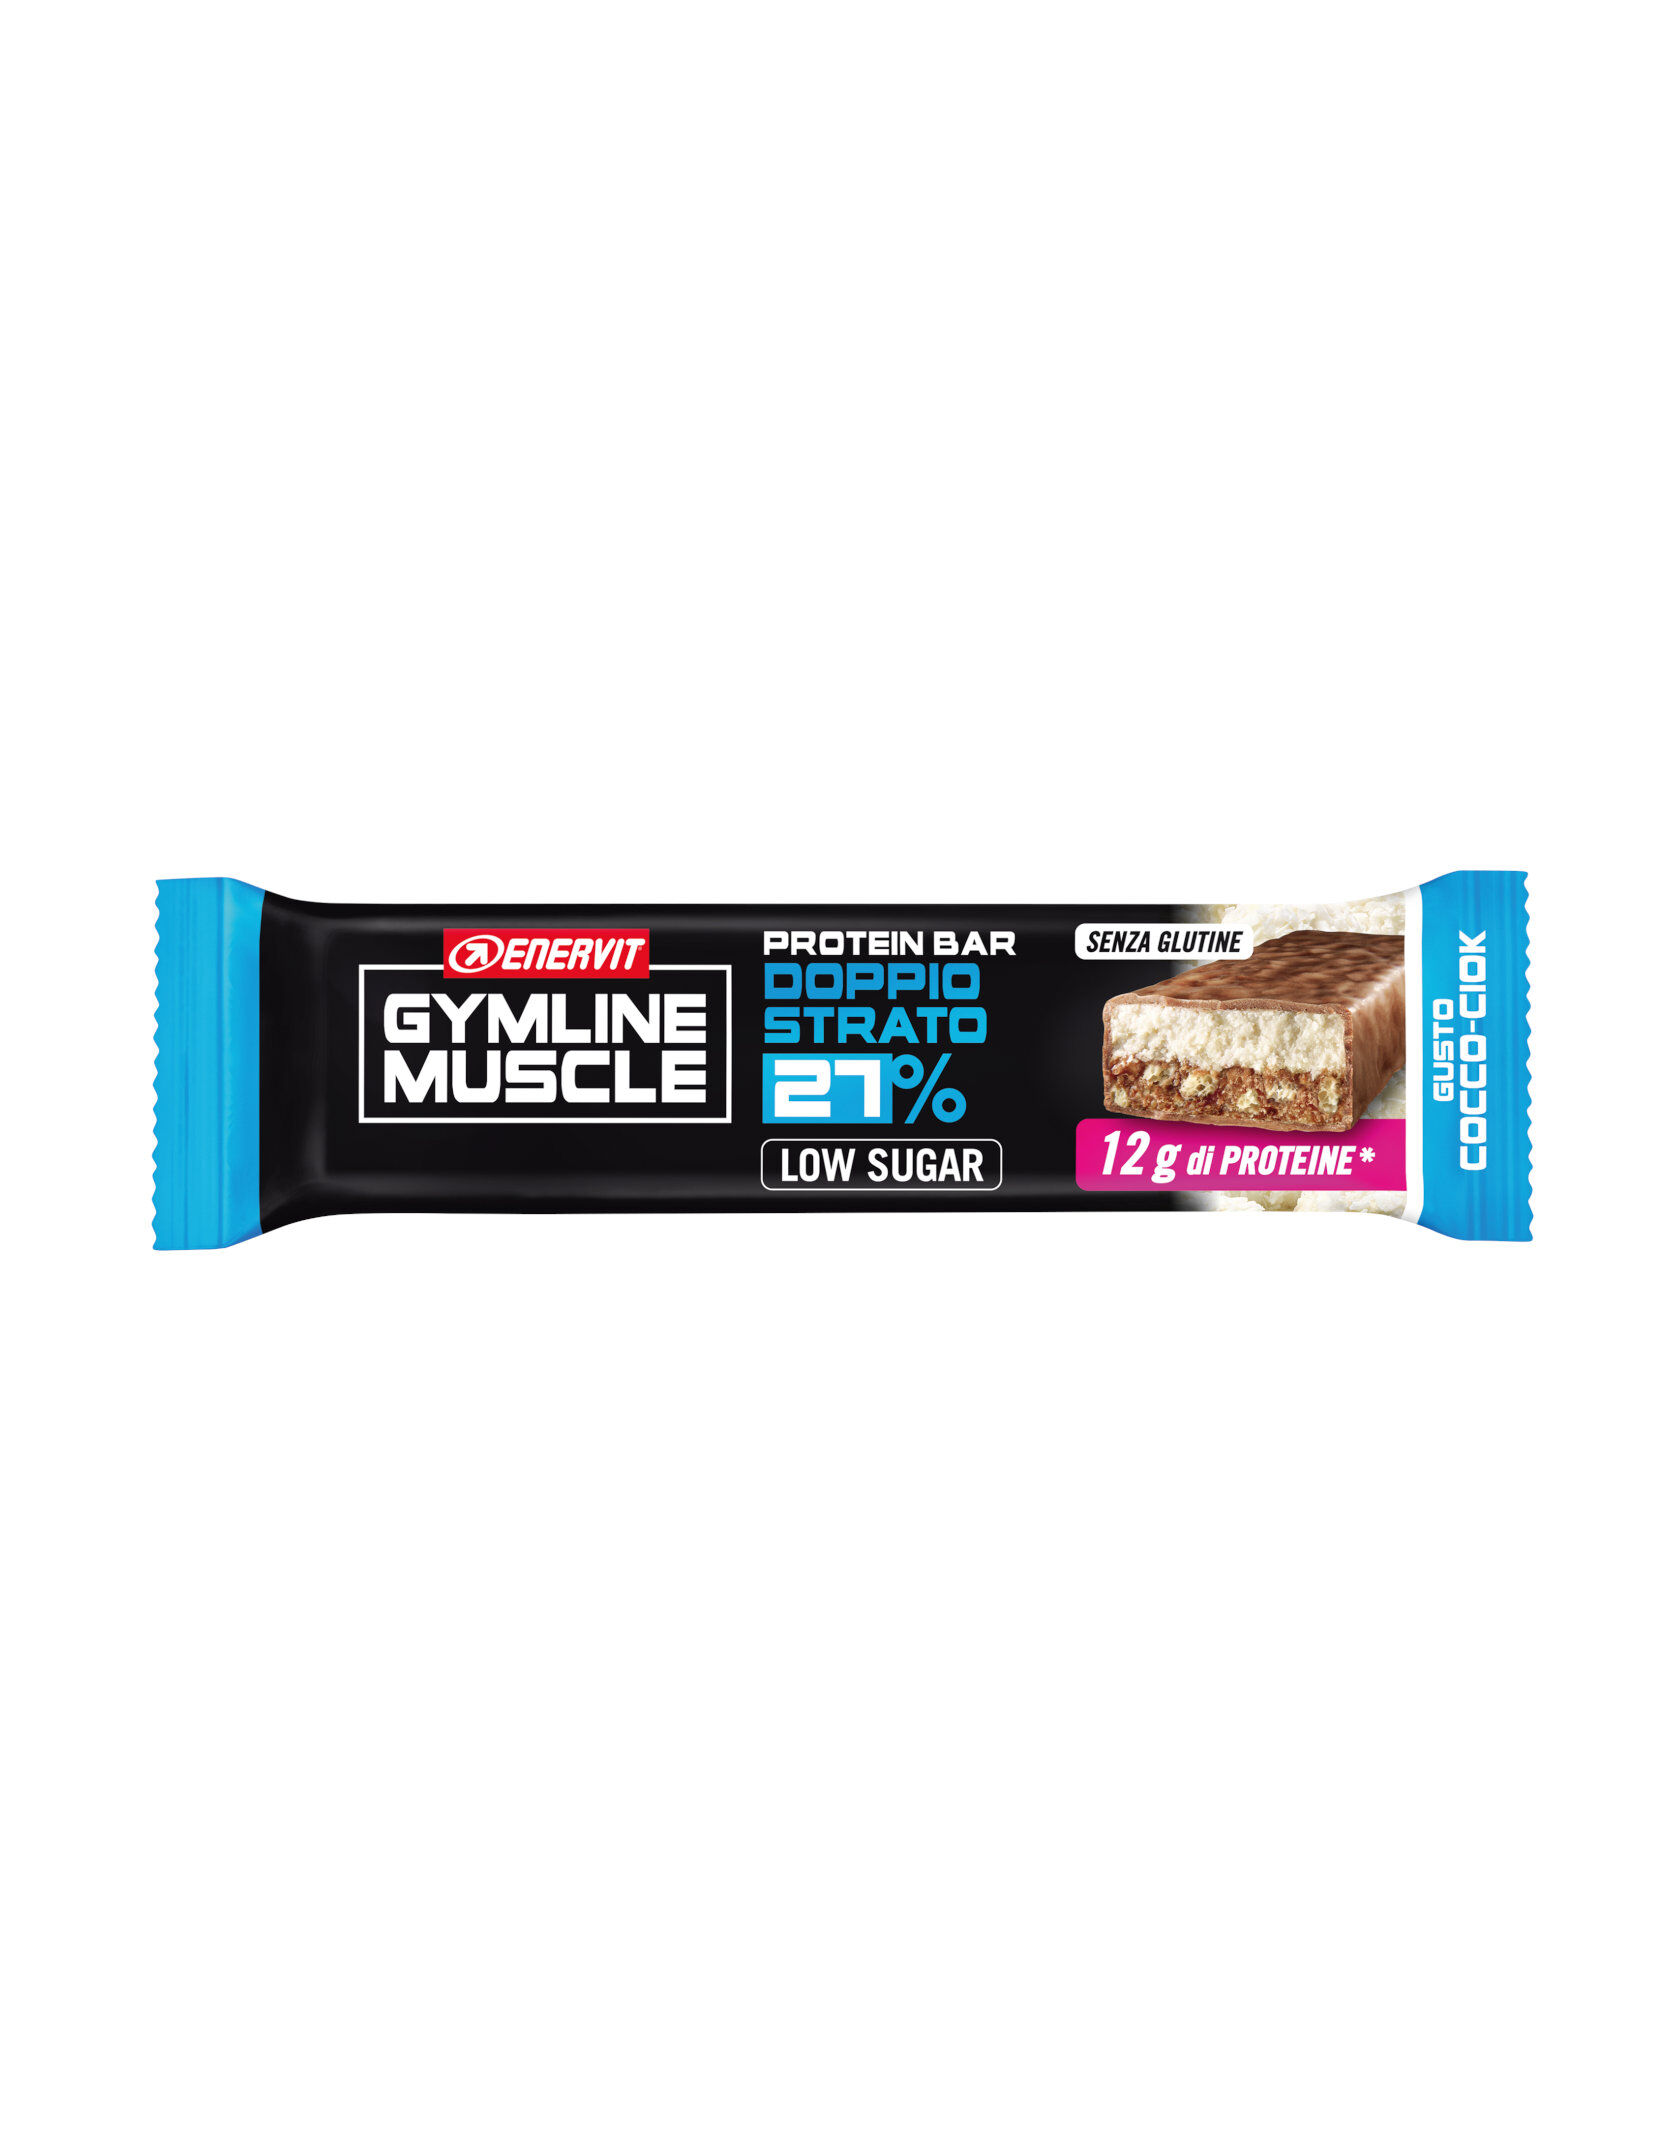 enervit gymline muscle protein bar 27% 1 barretta da 45 grammi cocco-ciok